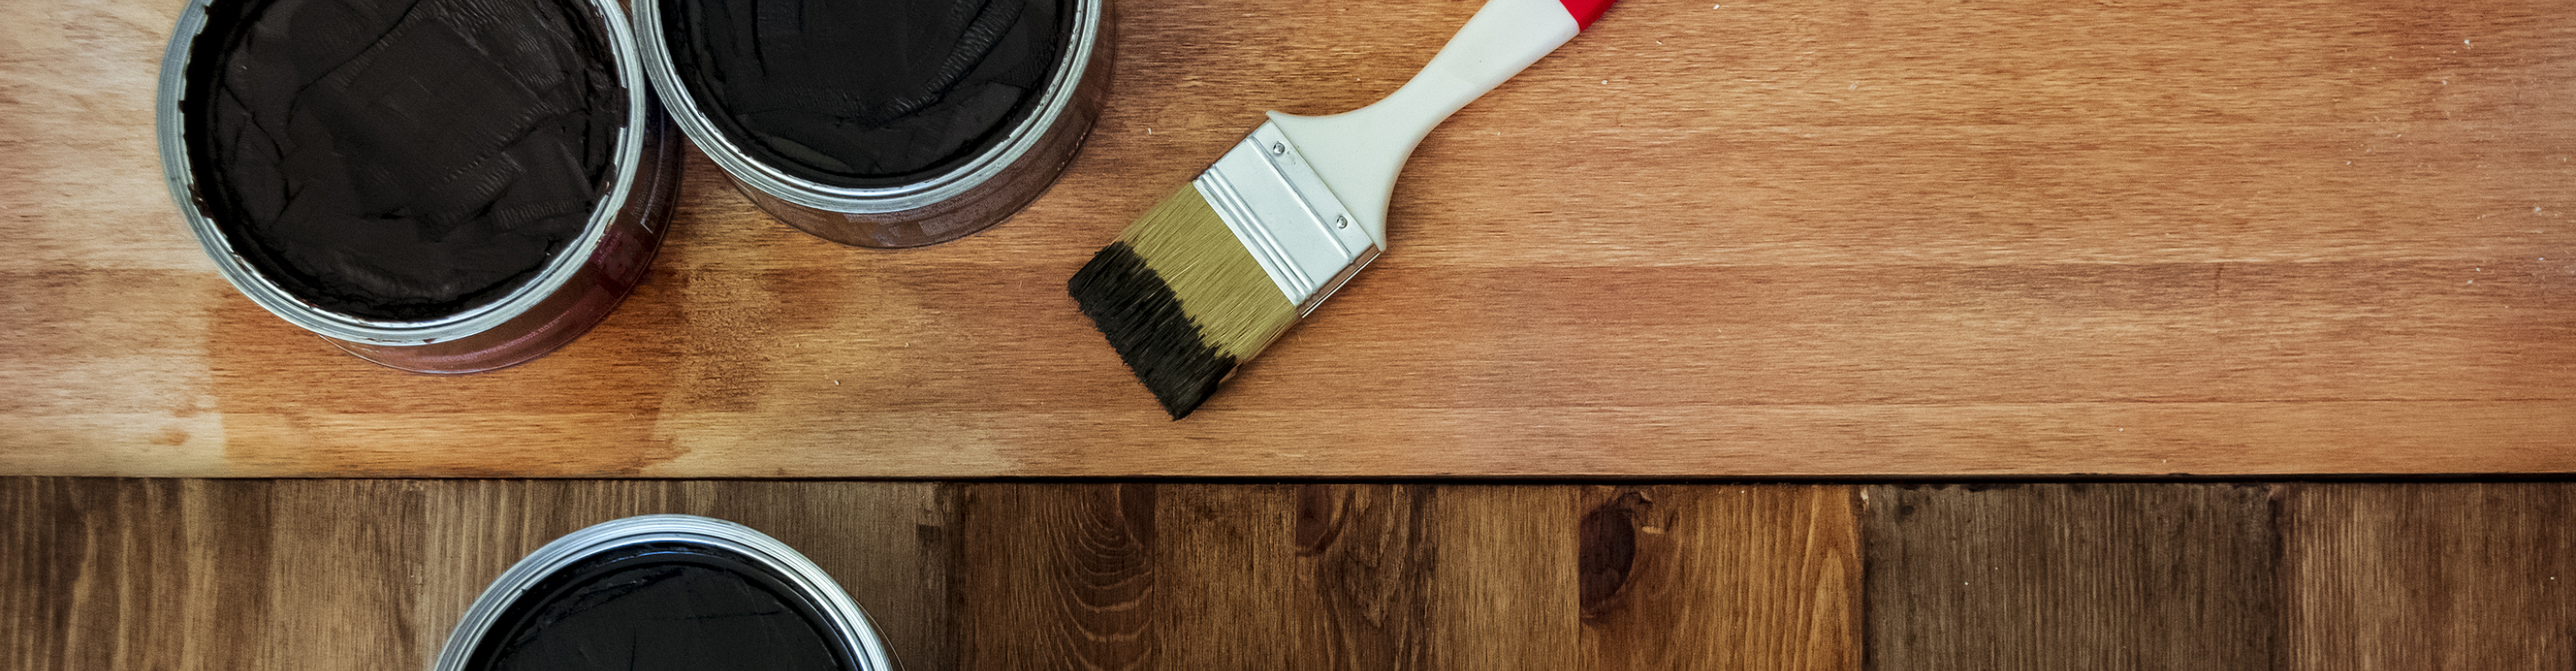 Hardwood with Refinishing Paint brush and Refinishing Dark Wood Stain